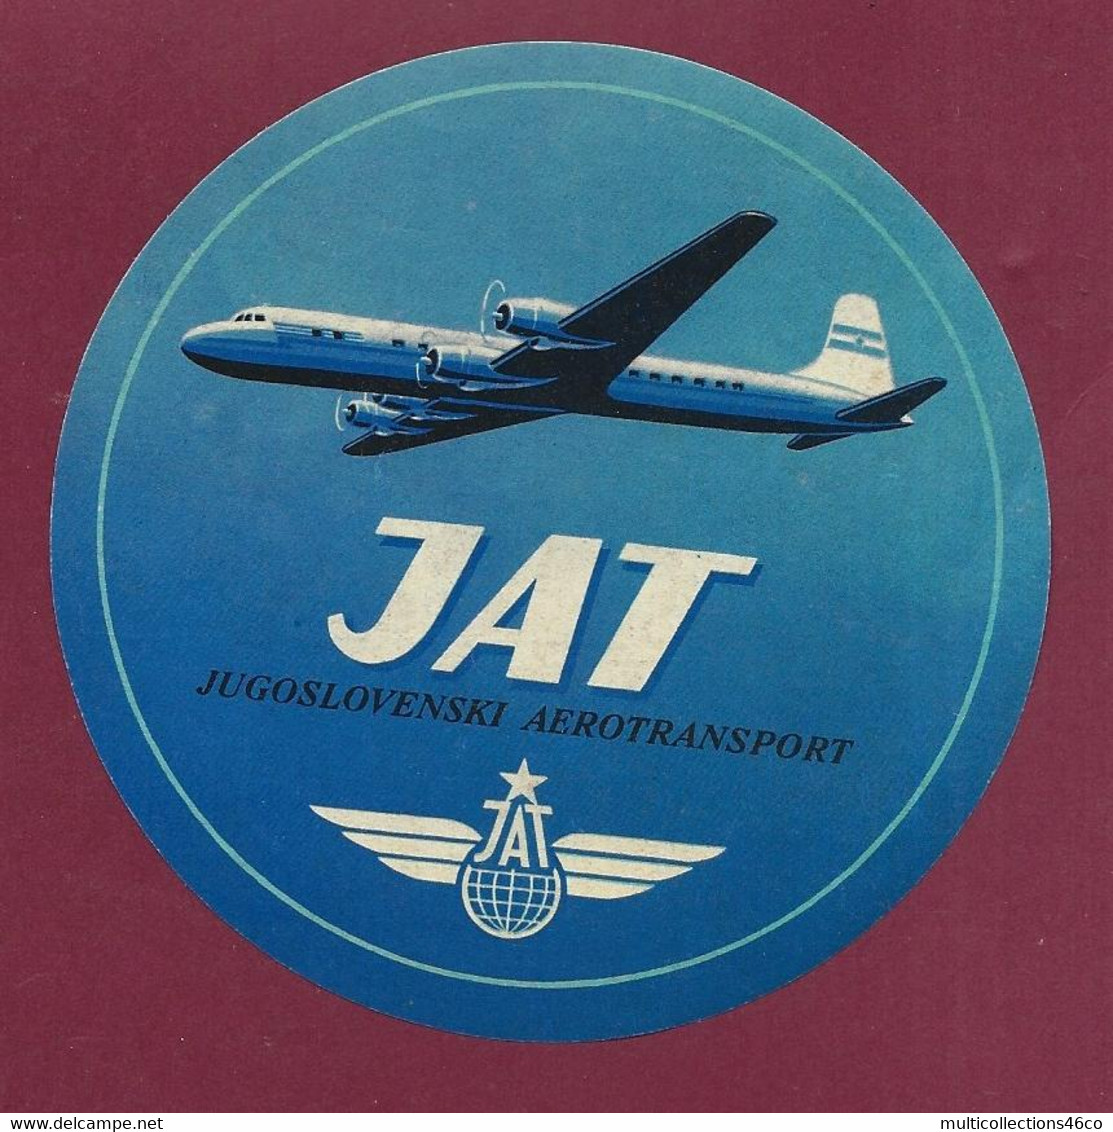 060922 - AVIATION ETIQUETTE A BAGAGE - JAT JUGOSLOVENSKI AEROTRANSPORT - Yougoslavie - Étiquettes à Bagages